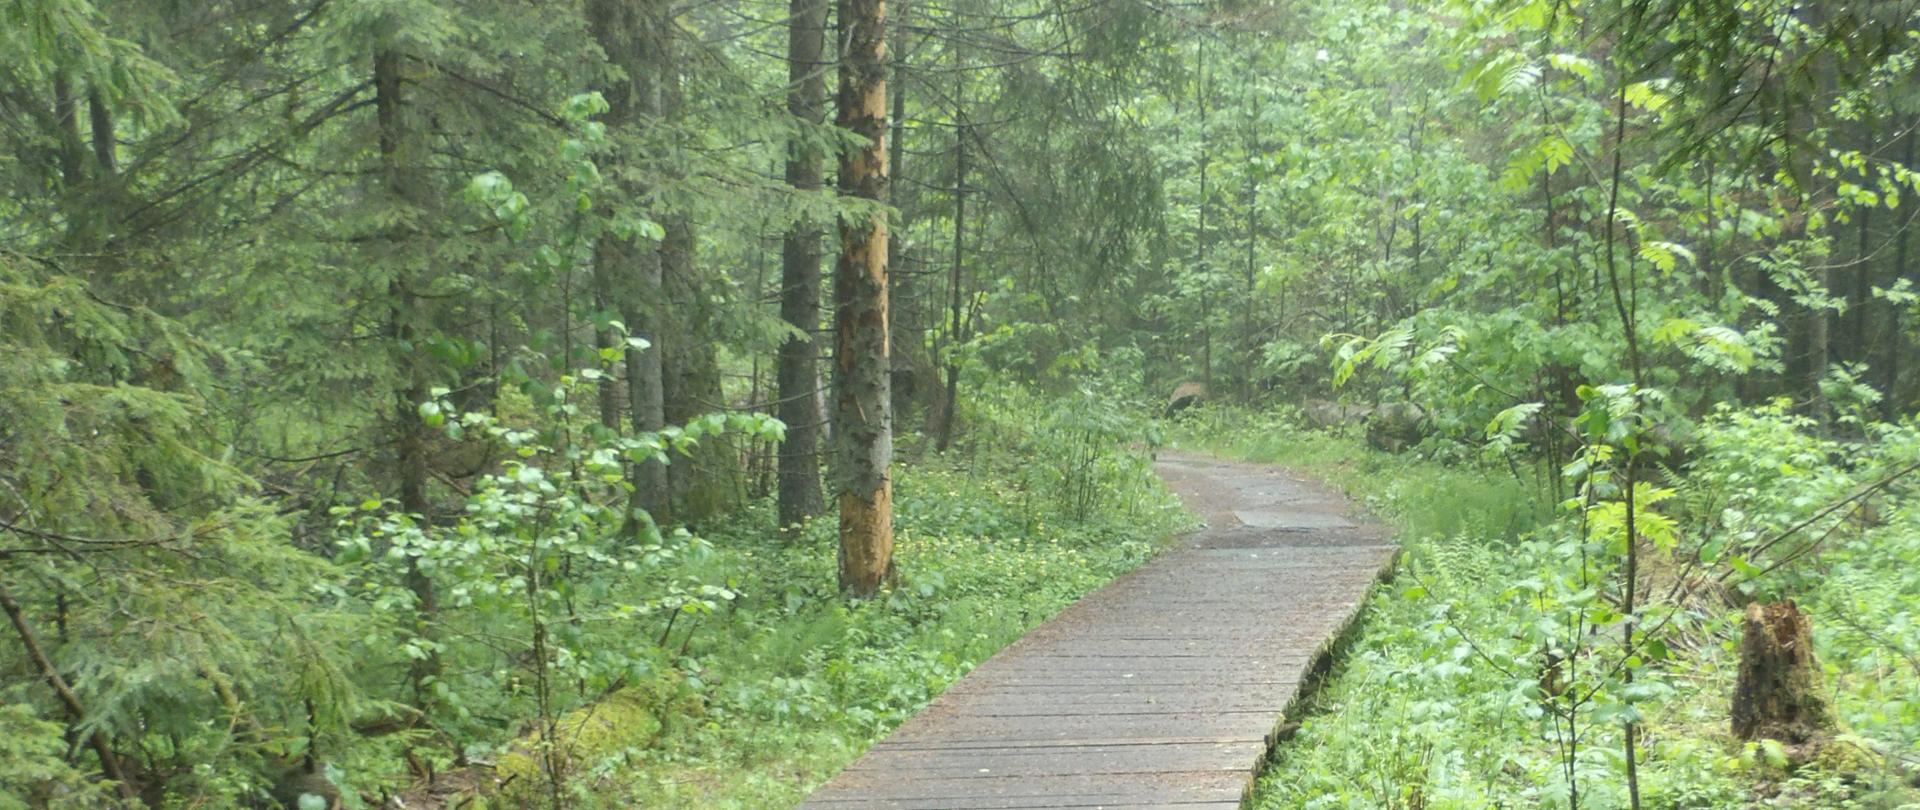 Na zdjęciu widać drewnianą ścieżkę w rezerwacie przyrody Krzemianka